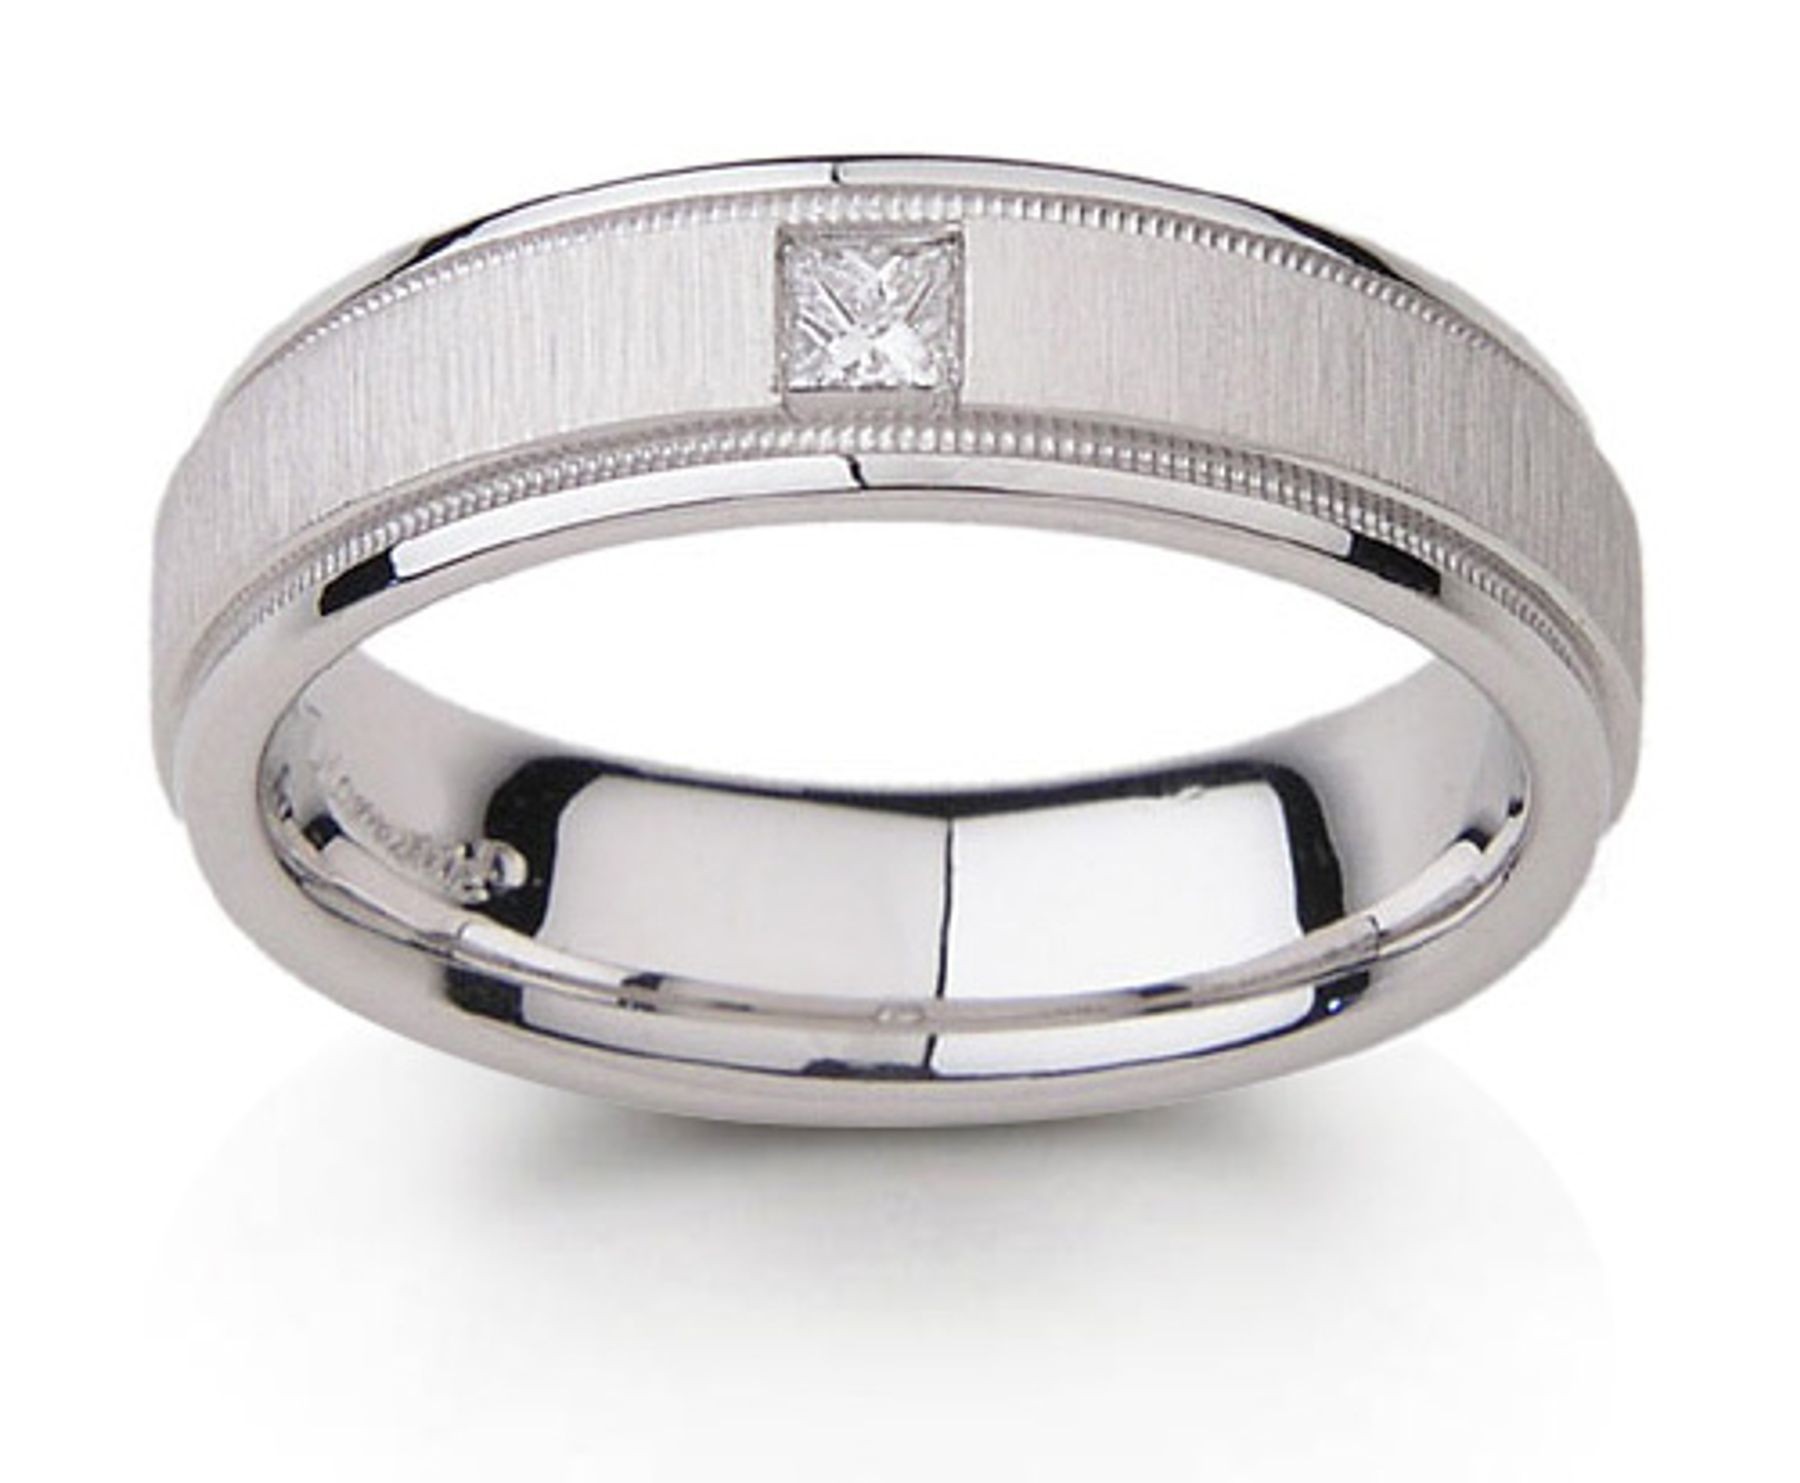  Platinum Diamond Ring with Princess Cut Diamond